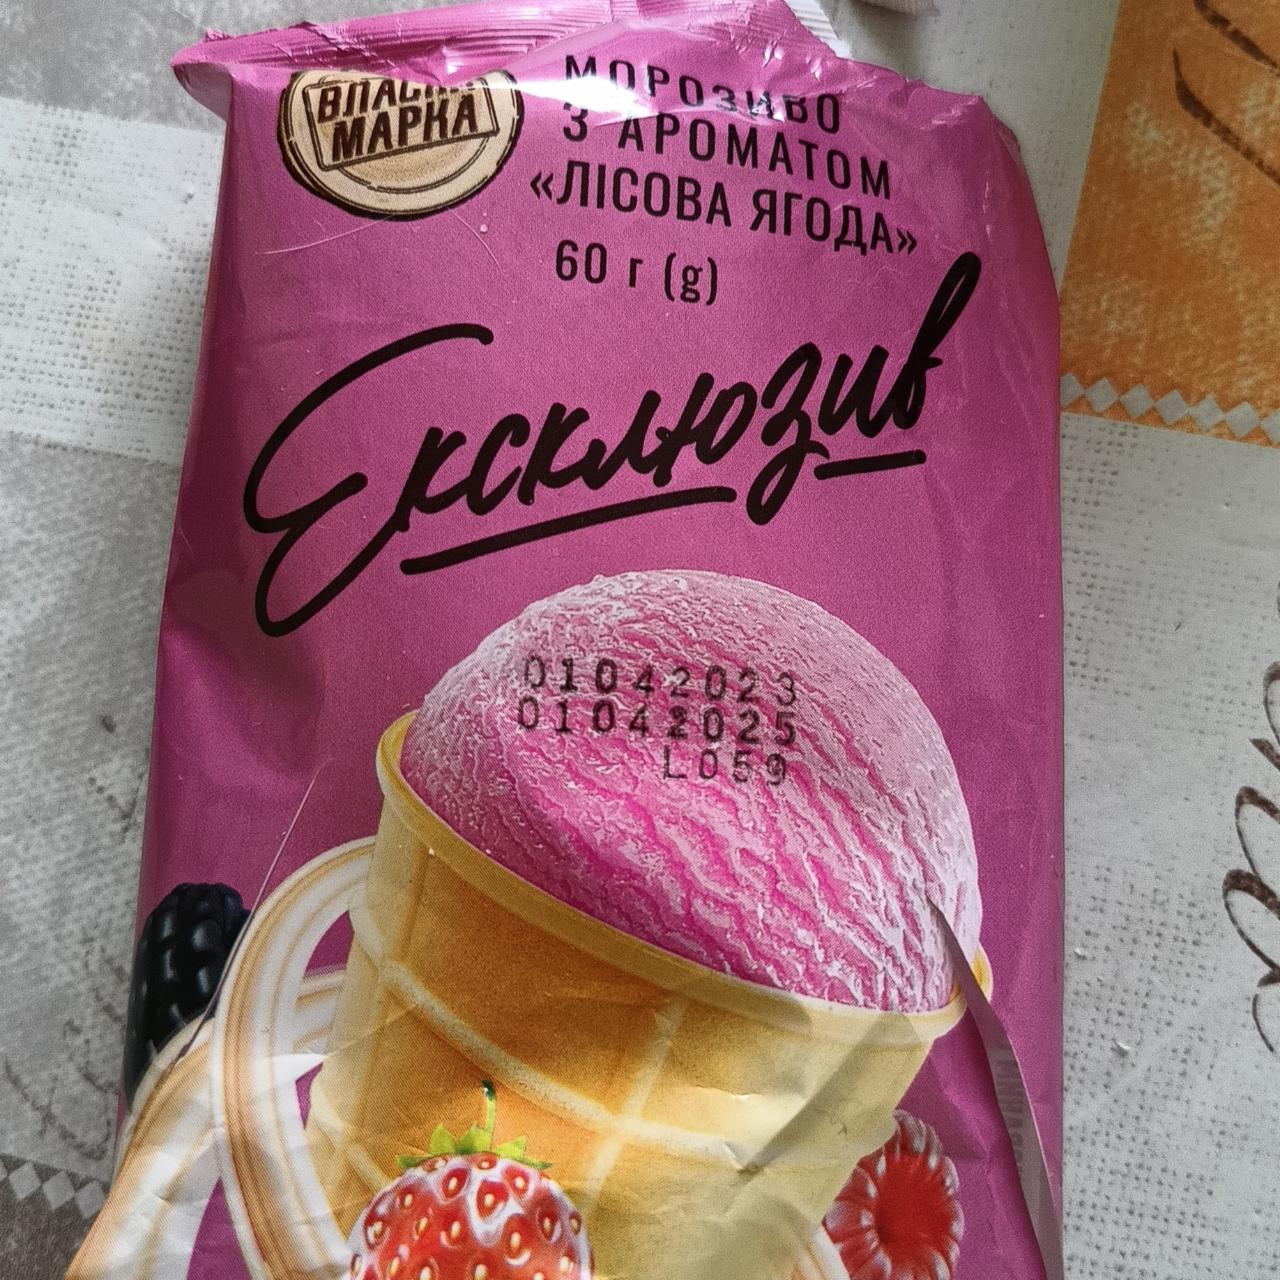 Фото - Мороженое эксклюзив с ароматом лесная ягода Власна марка